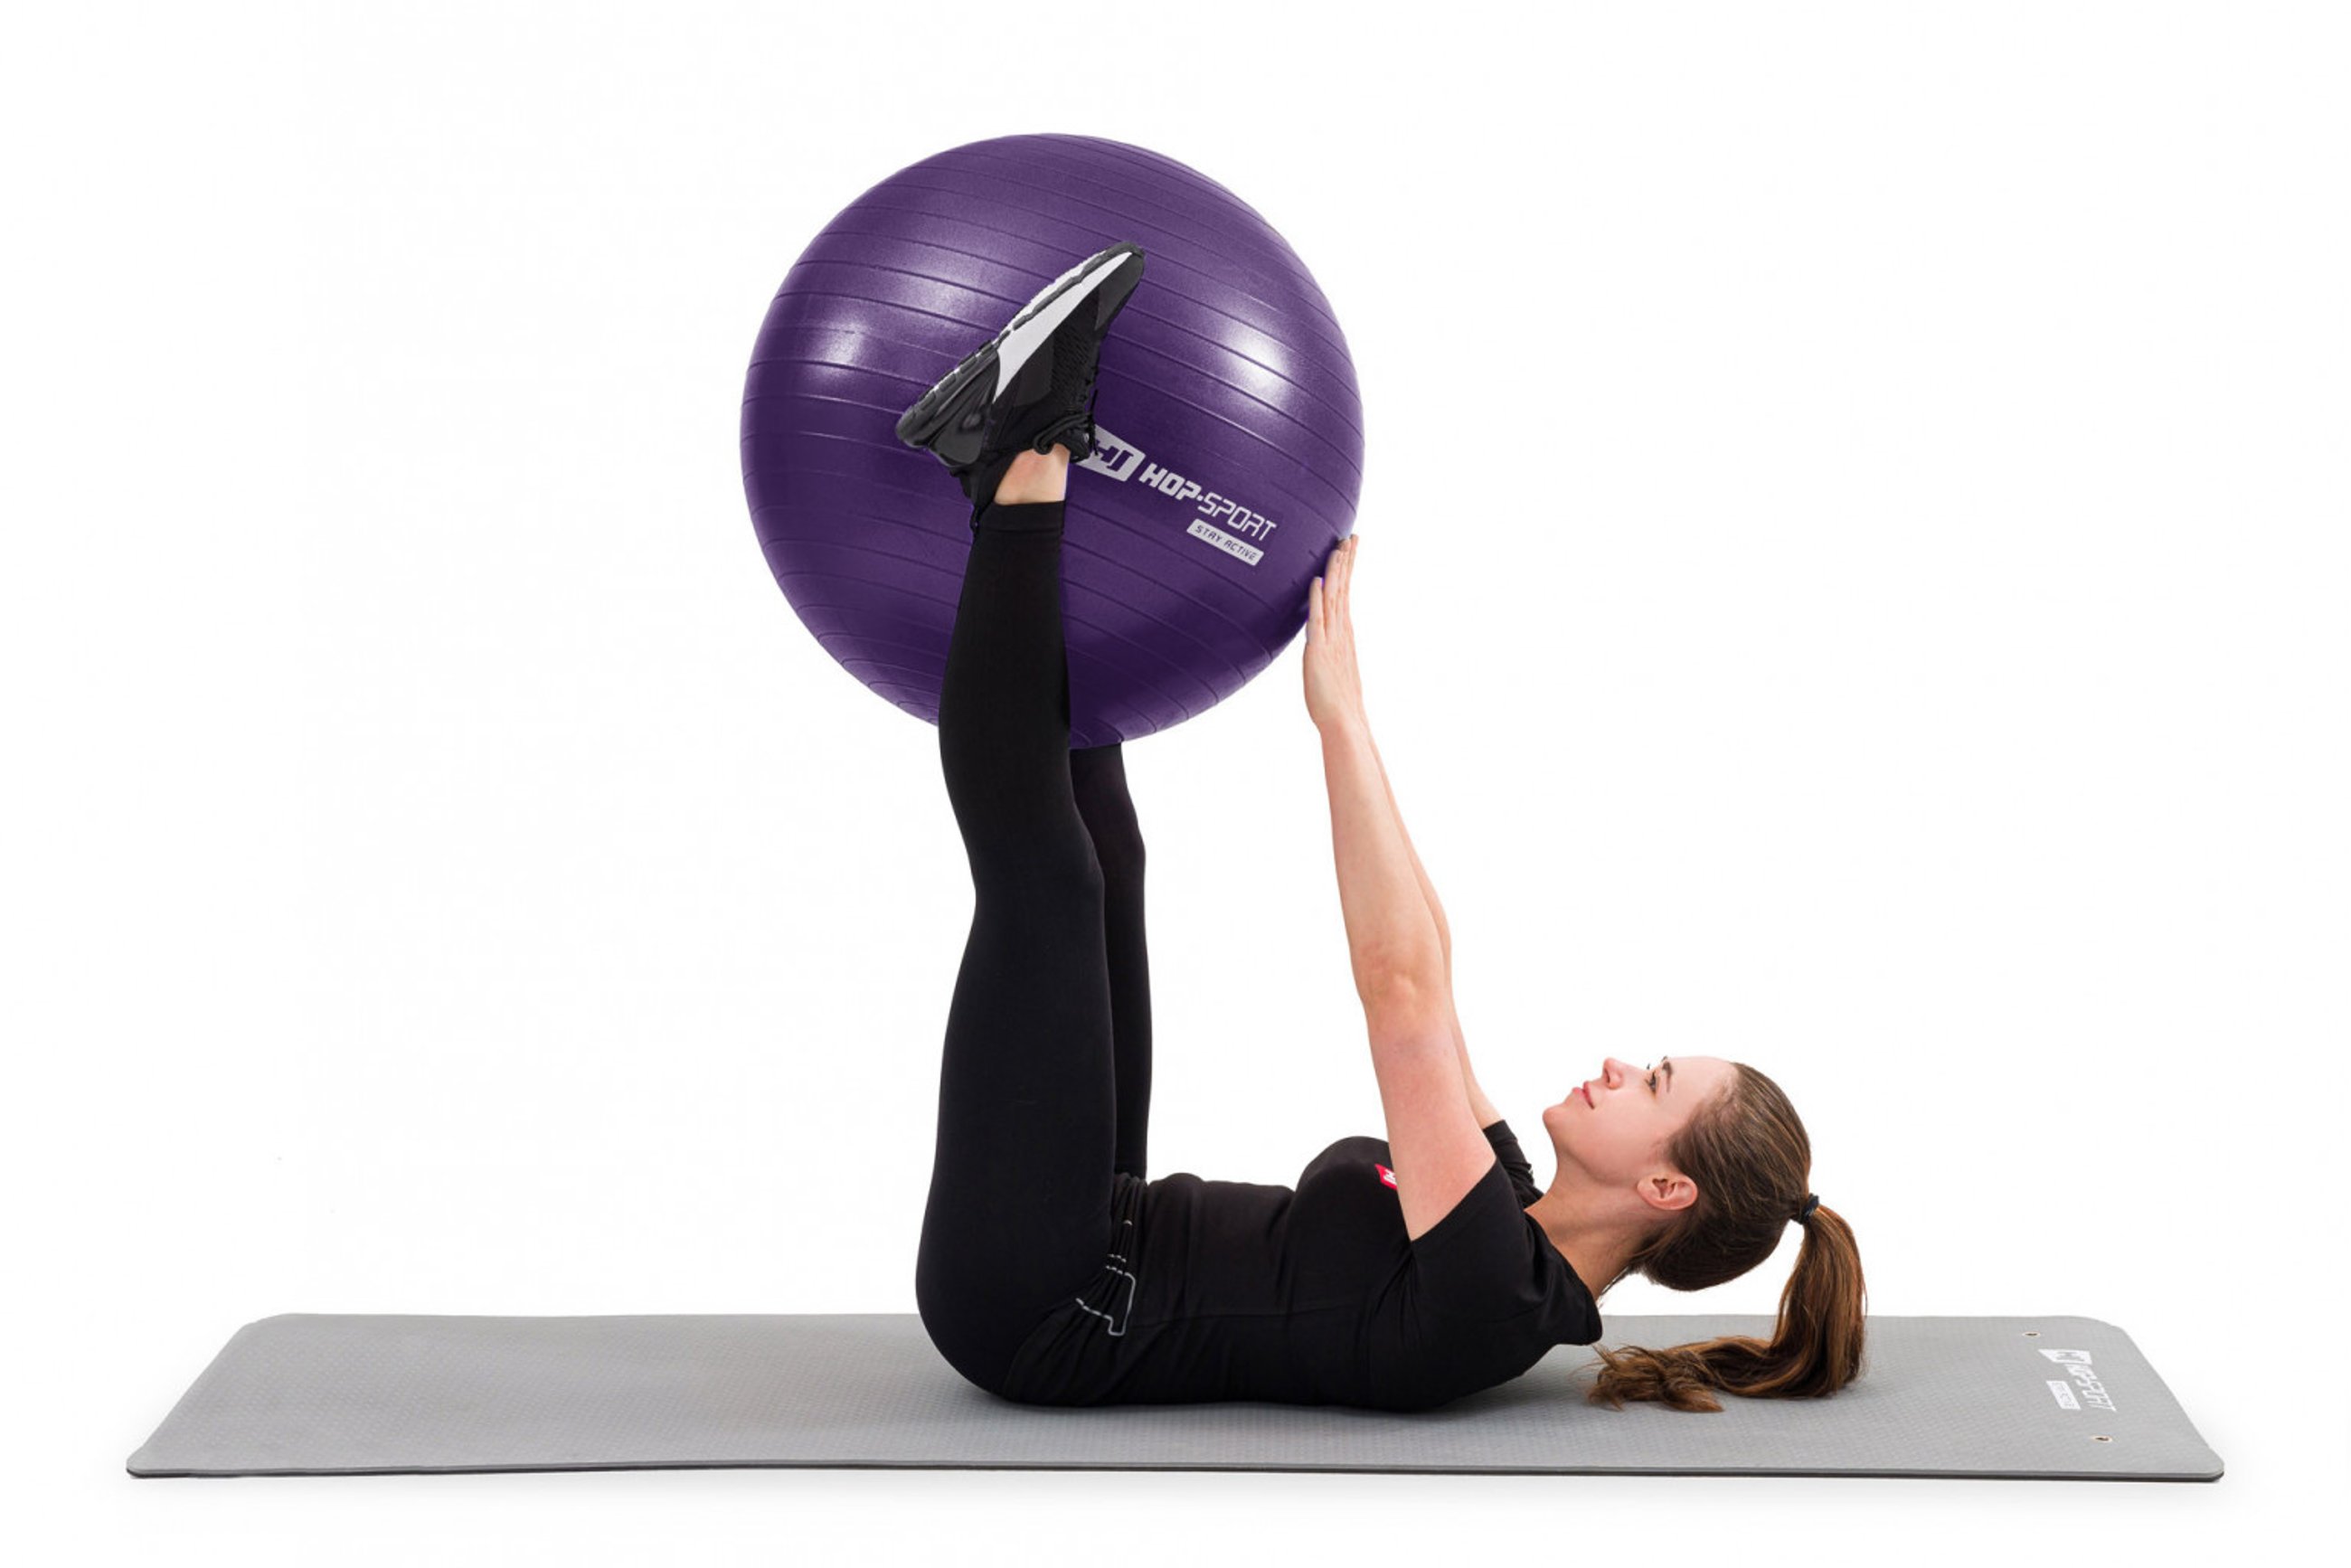 modelka ćwicząca na szarej macie fitness z fioletową piłką gimnastyczną marki Hop-Sport